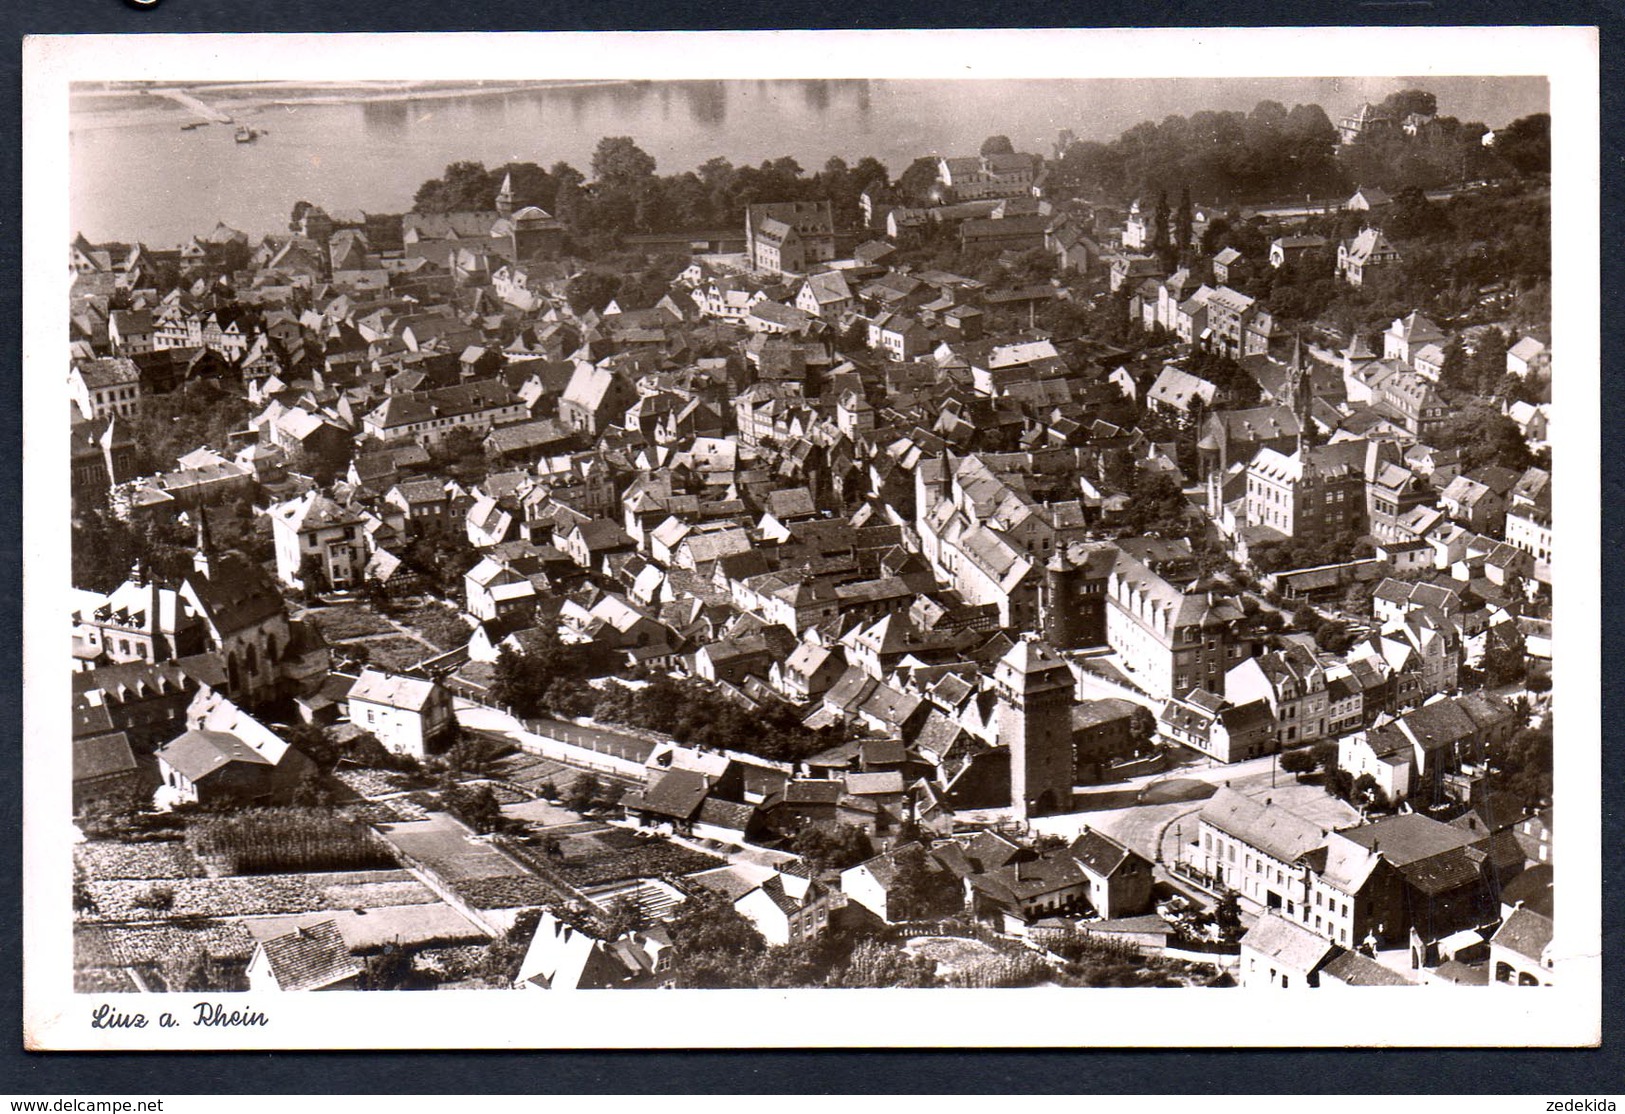 8827 - Alte Foto Ansichtskarte - Linz - Luftbild Luftaufnahme - Ewald Steiniger - N. Gel - Linz A. Rhein